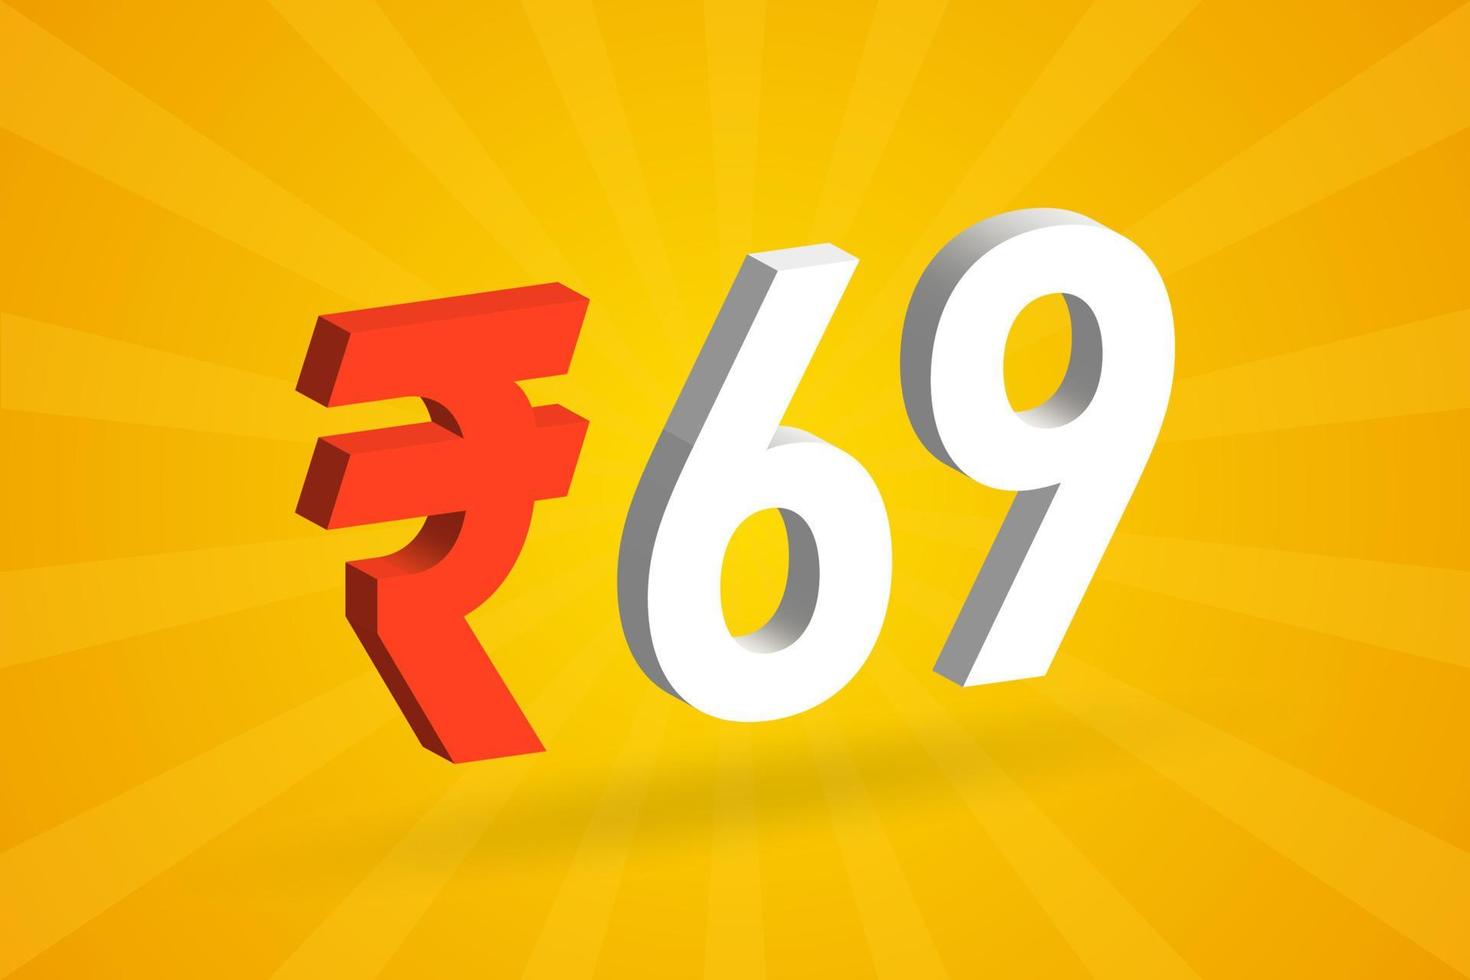 69 rupia símbolo 3d imagem de vetor de texto em negrito. 3d 69 rupia indiana ilustração vetorial de sinal de moeda